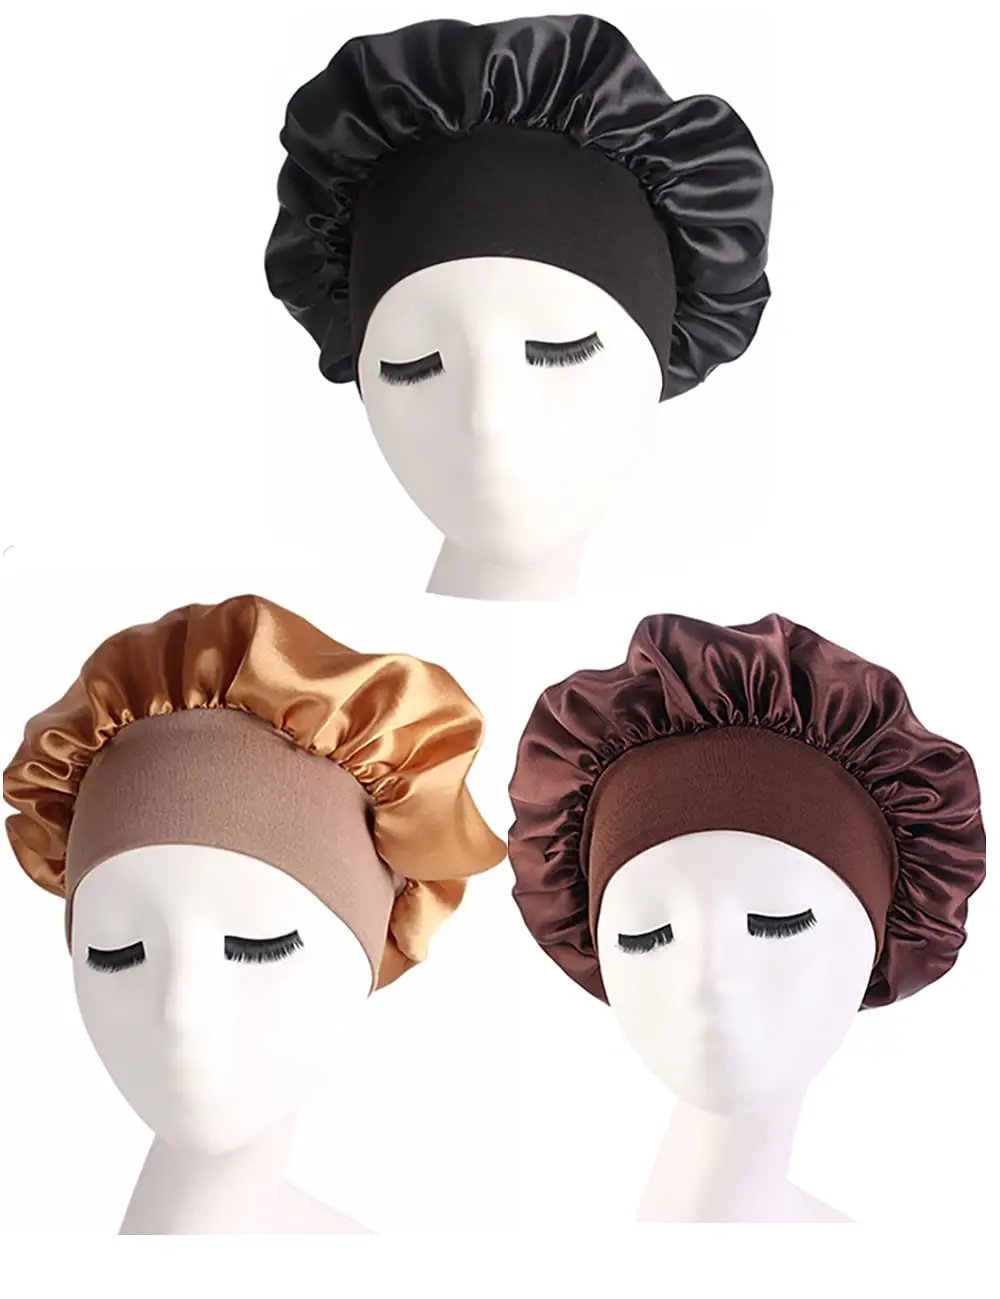 Оптовая продажа, атласная шелковая шляпа для ухода за волосами, эластичная широкая повязка на голову, головной убор для ночного сна, мусульманский головной убор, хиджаб, тюрбан, шляпа для женщин